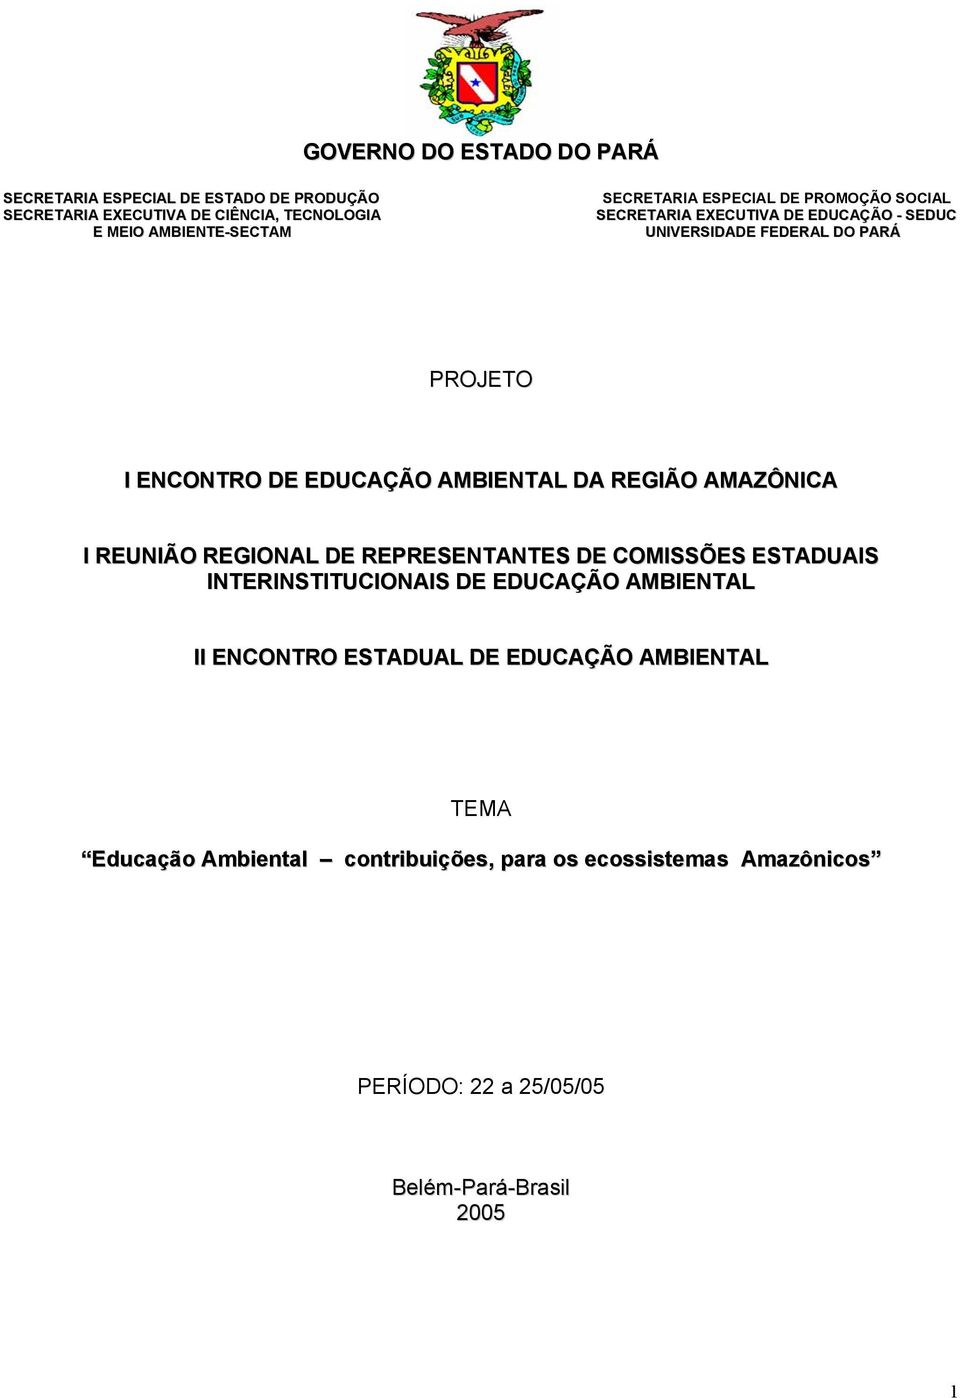 AMBIENTAL DA REGIÃO AMAZÔNICA I REUNIÃO REGIONAL DE REPRESENTANTES DE COMISSÕES ESTADUAIS INTERINSTITUCIONAIS DE EDUCAÇÃO AMBIENTAL II